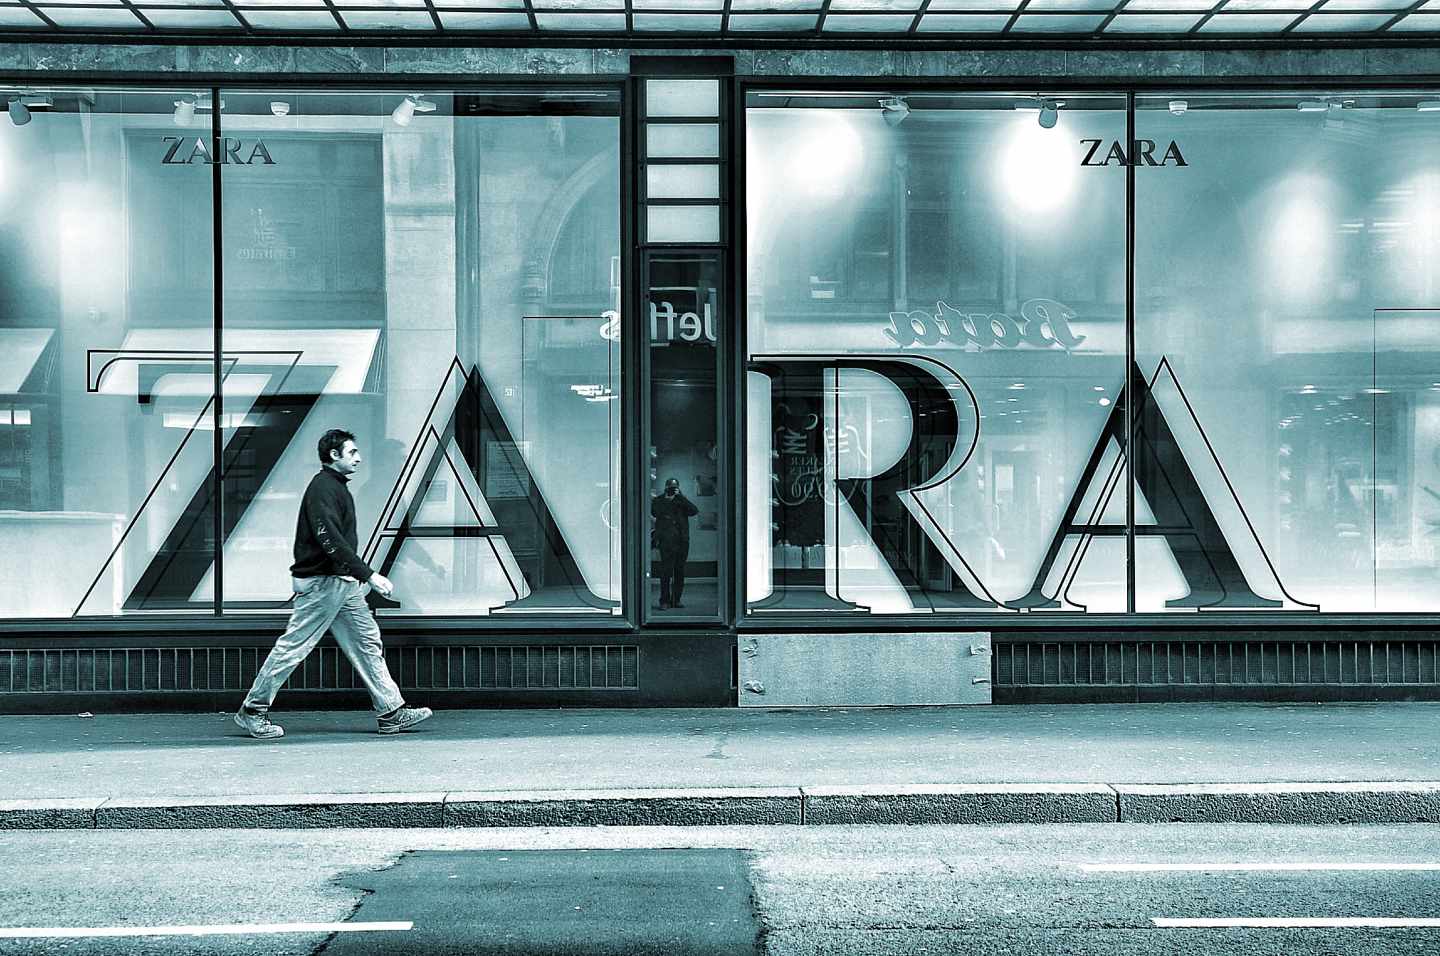 Escaparate de una tienda de Zara.